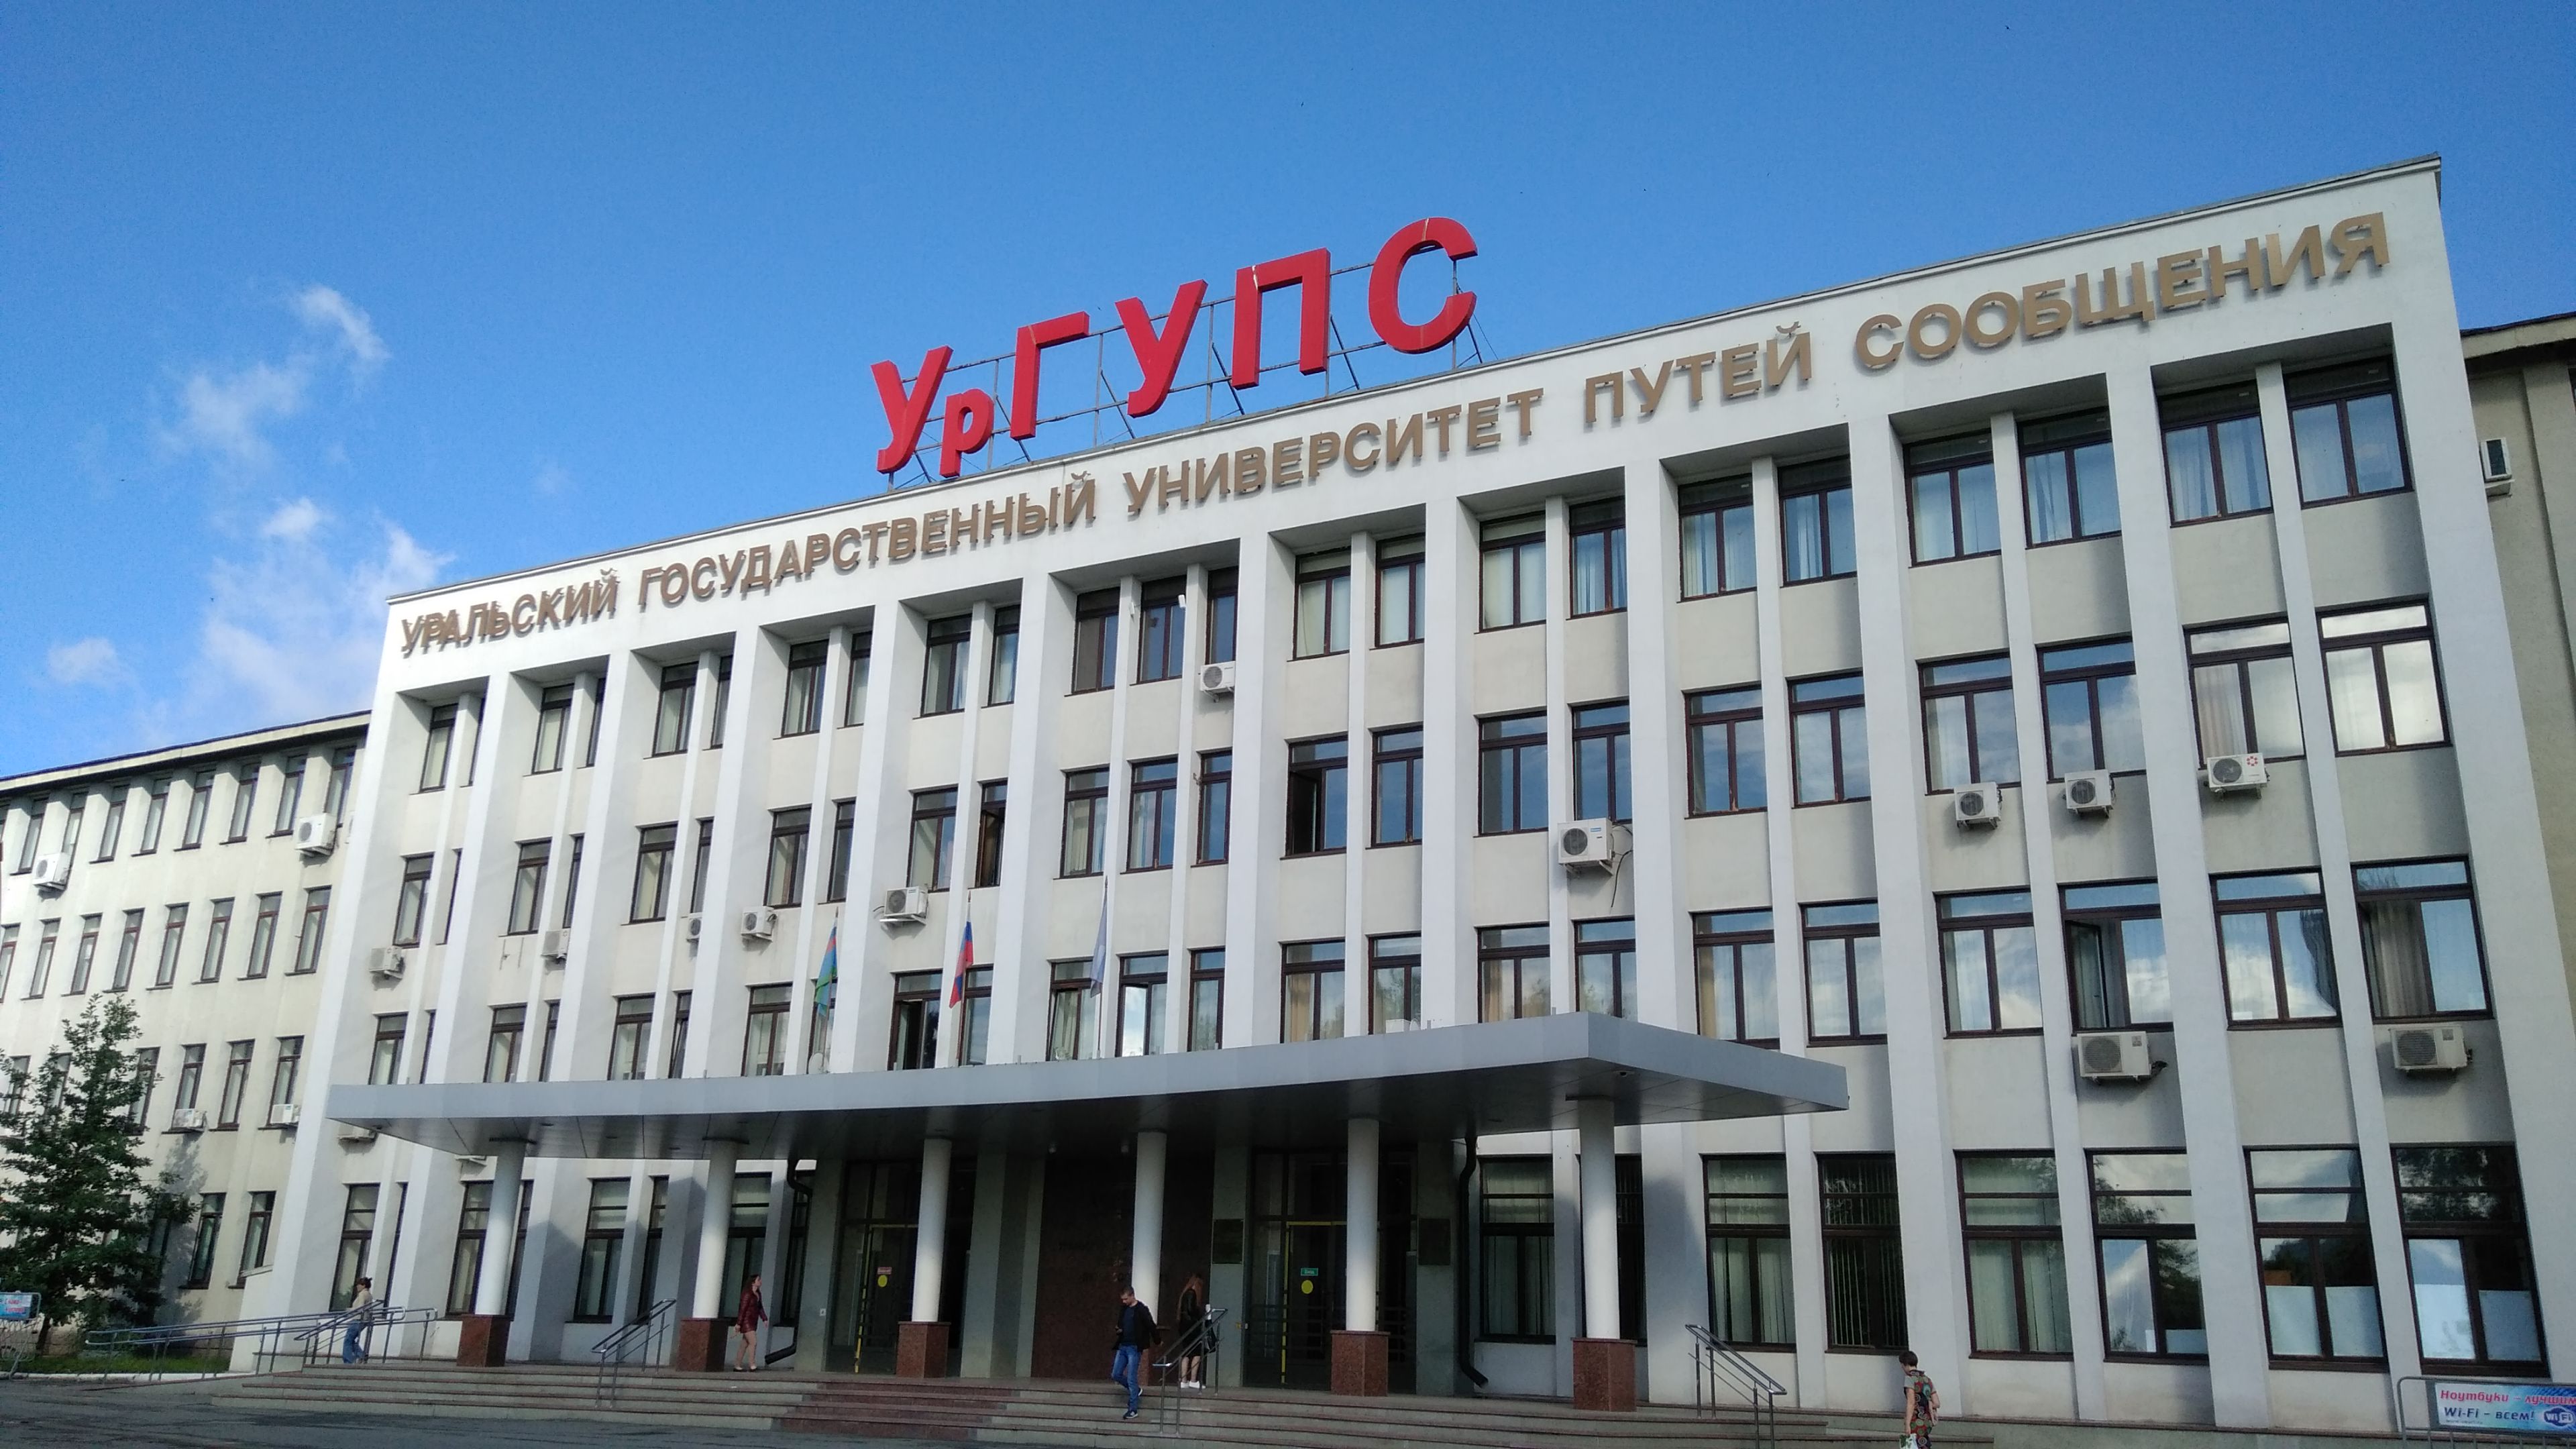 Вузы Екатеринбурга: университеты, академии, институты, рейтинг